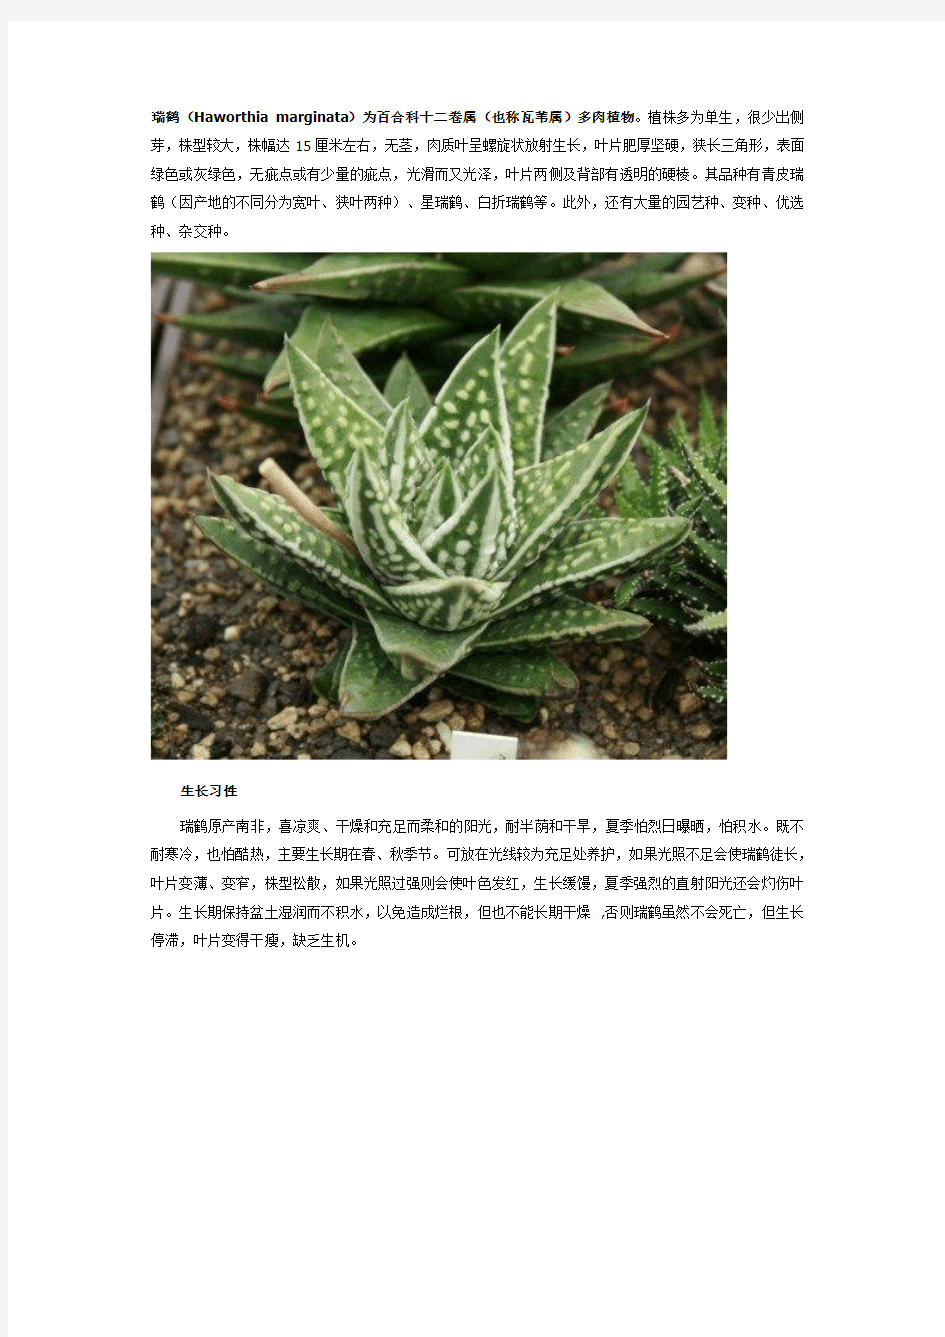 瑞鹤(Haworthia marginata)为百合科十二卷属(也称瓦苇属)多肉植物